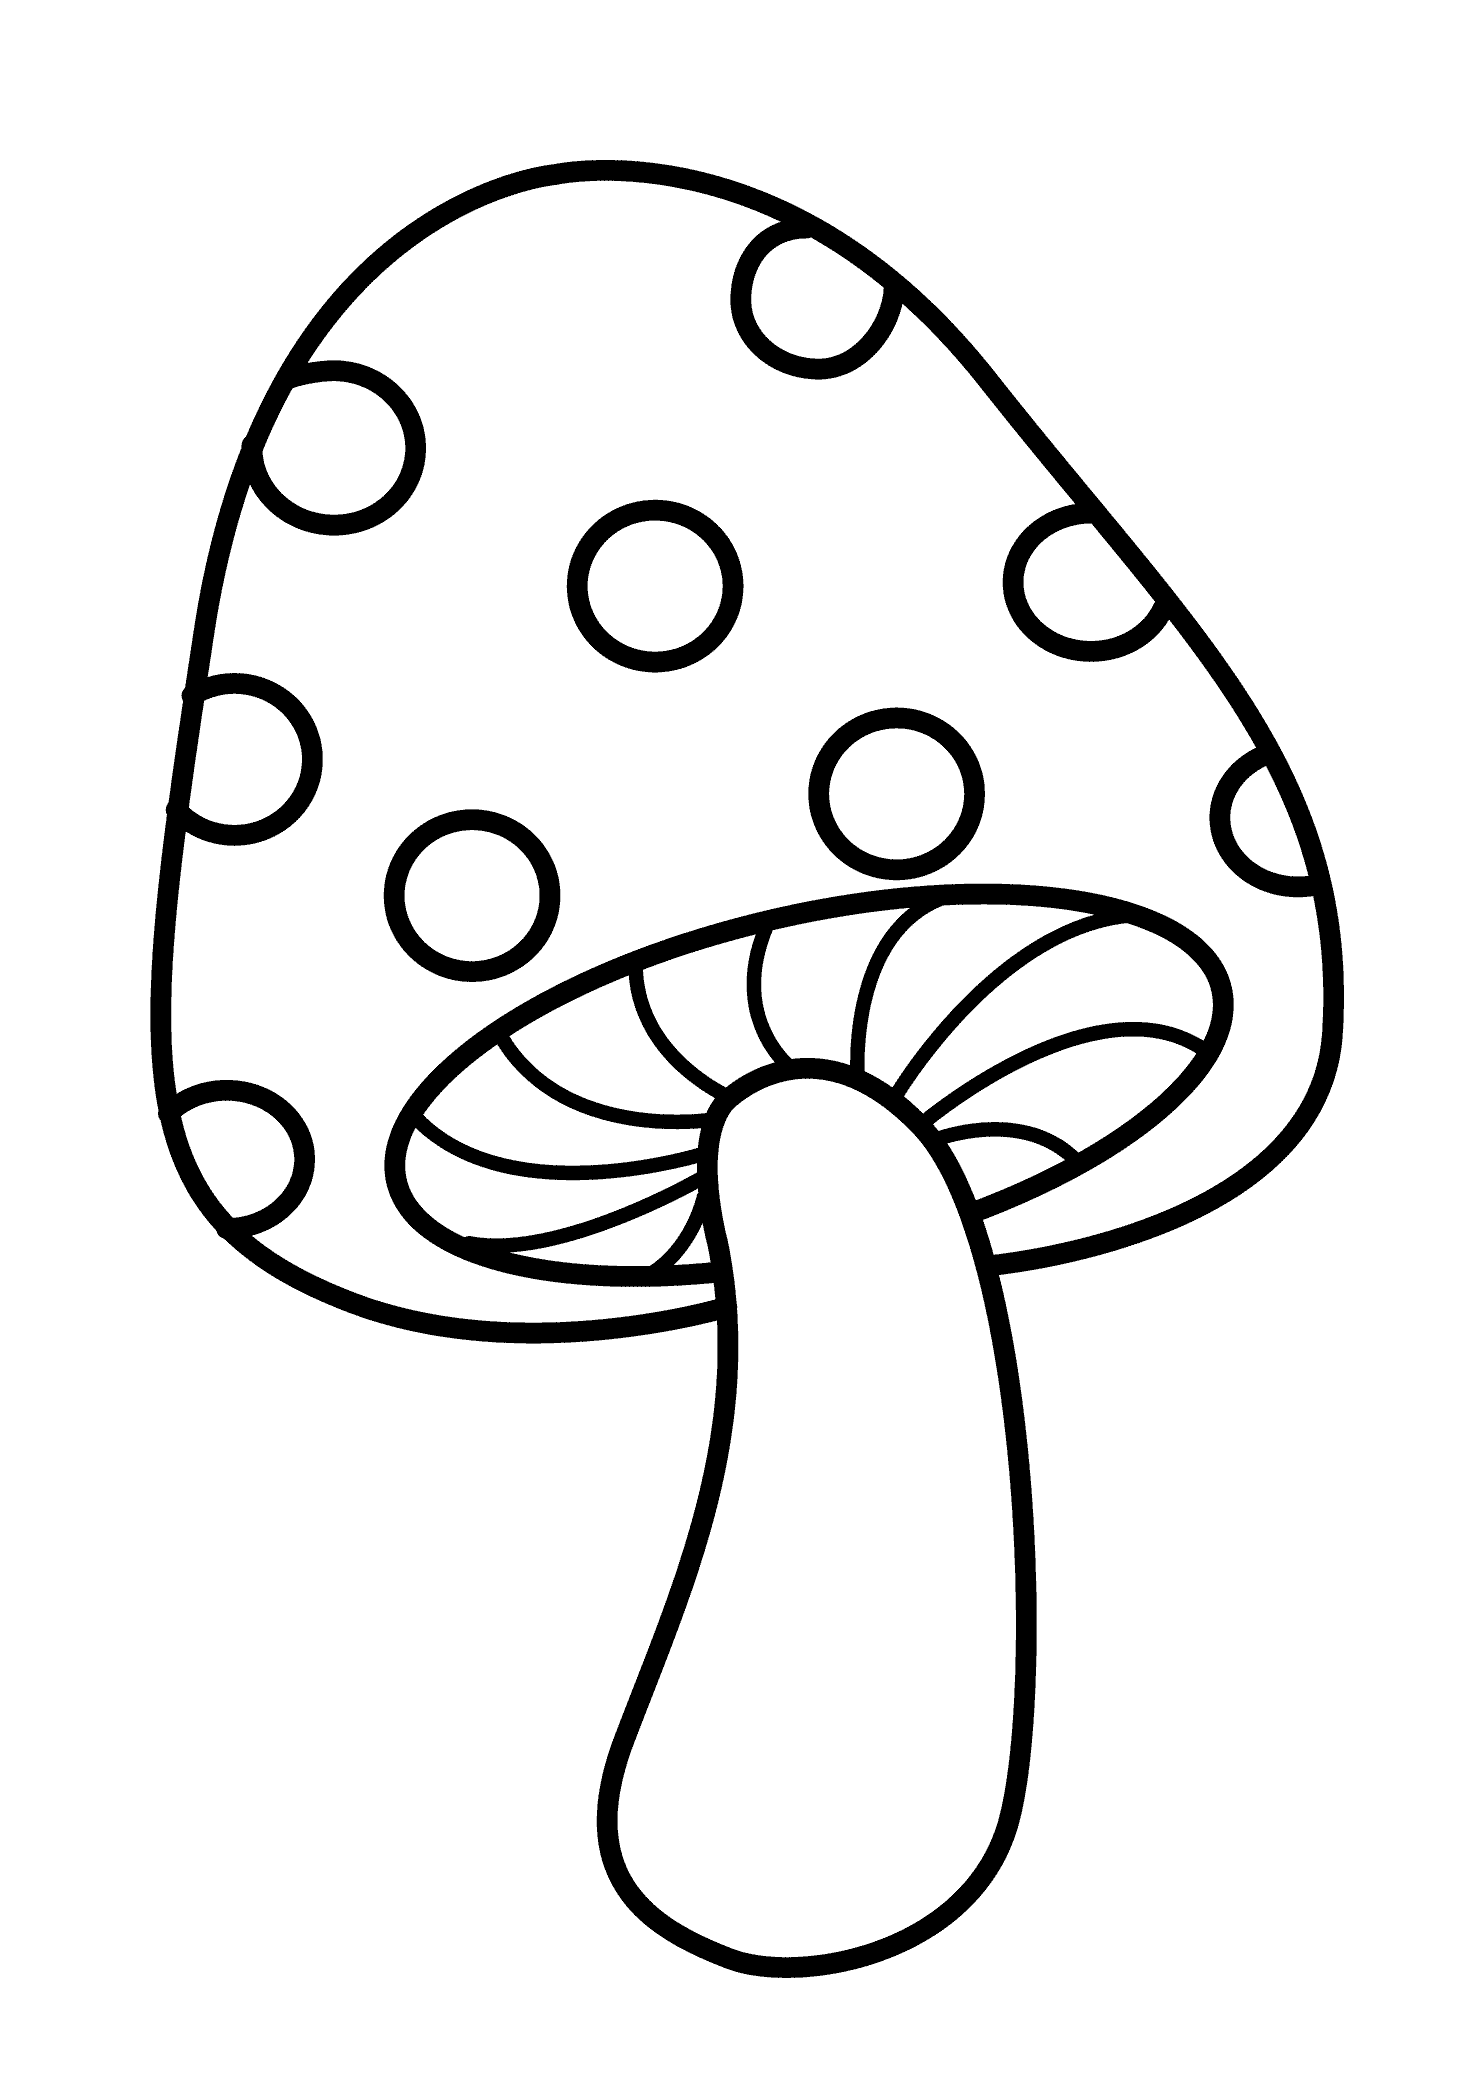 Vẽ cây nấm dễ thương  Hướng dẫn tô màu cây nấm  YouTube